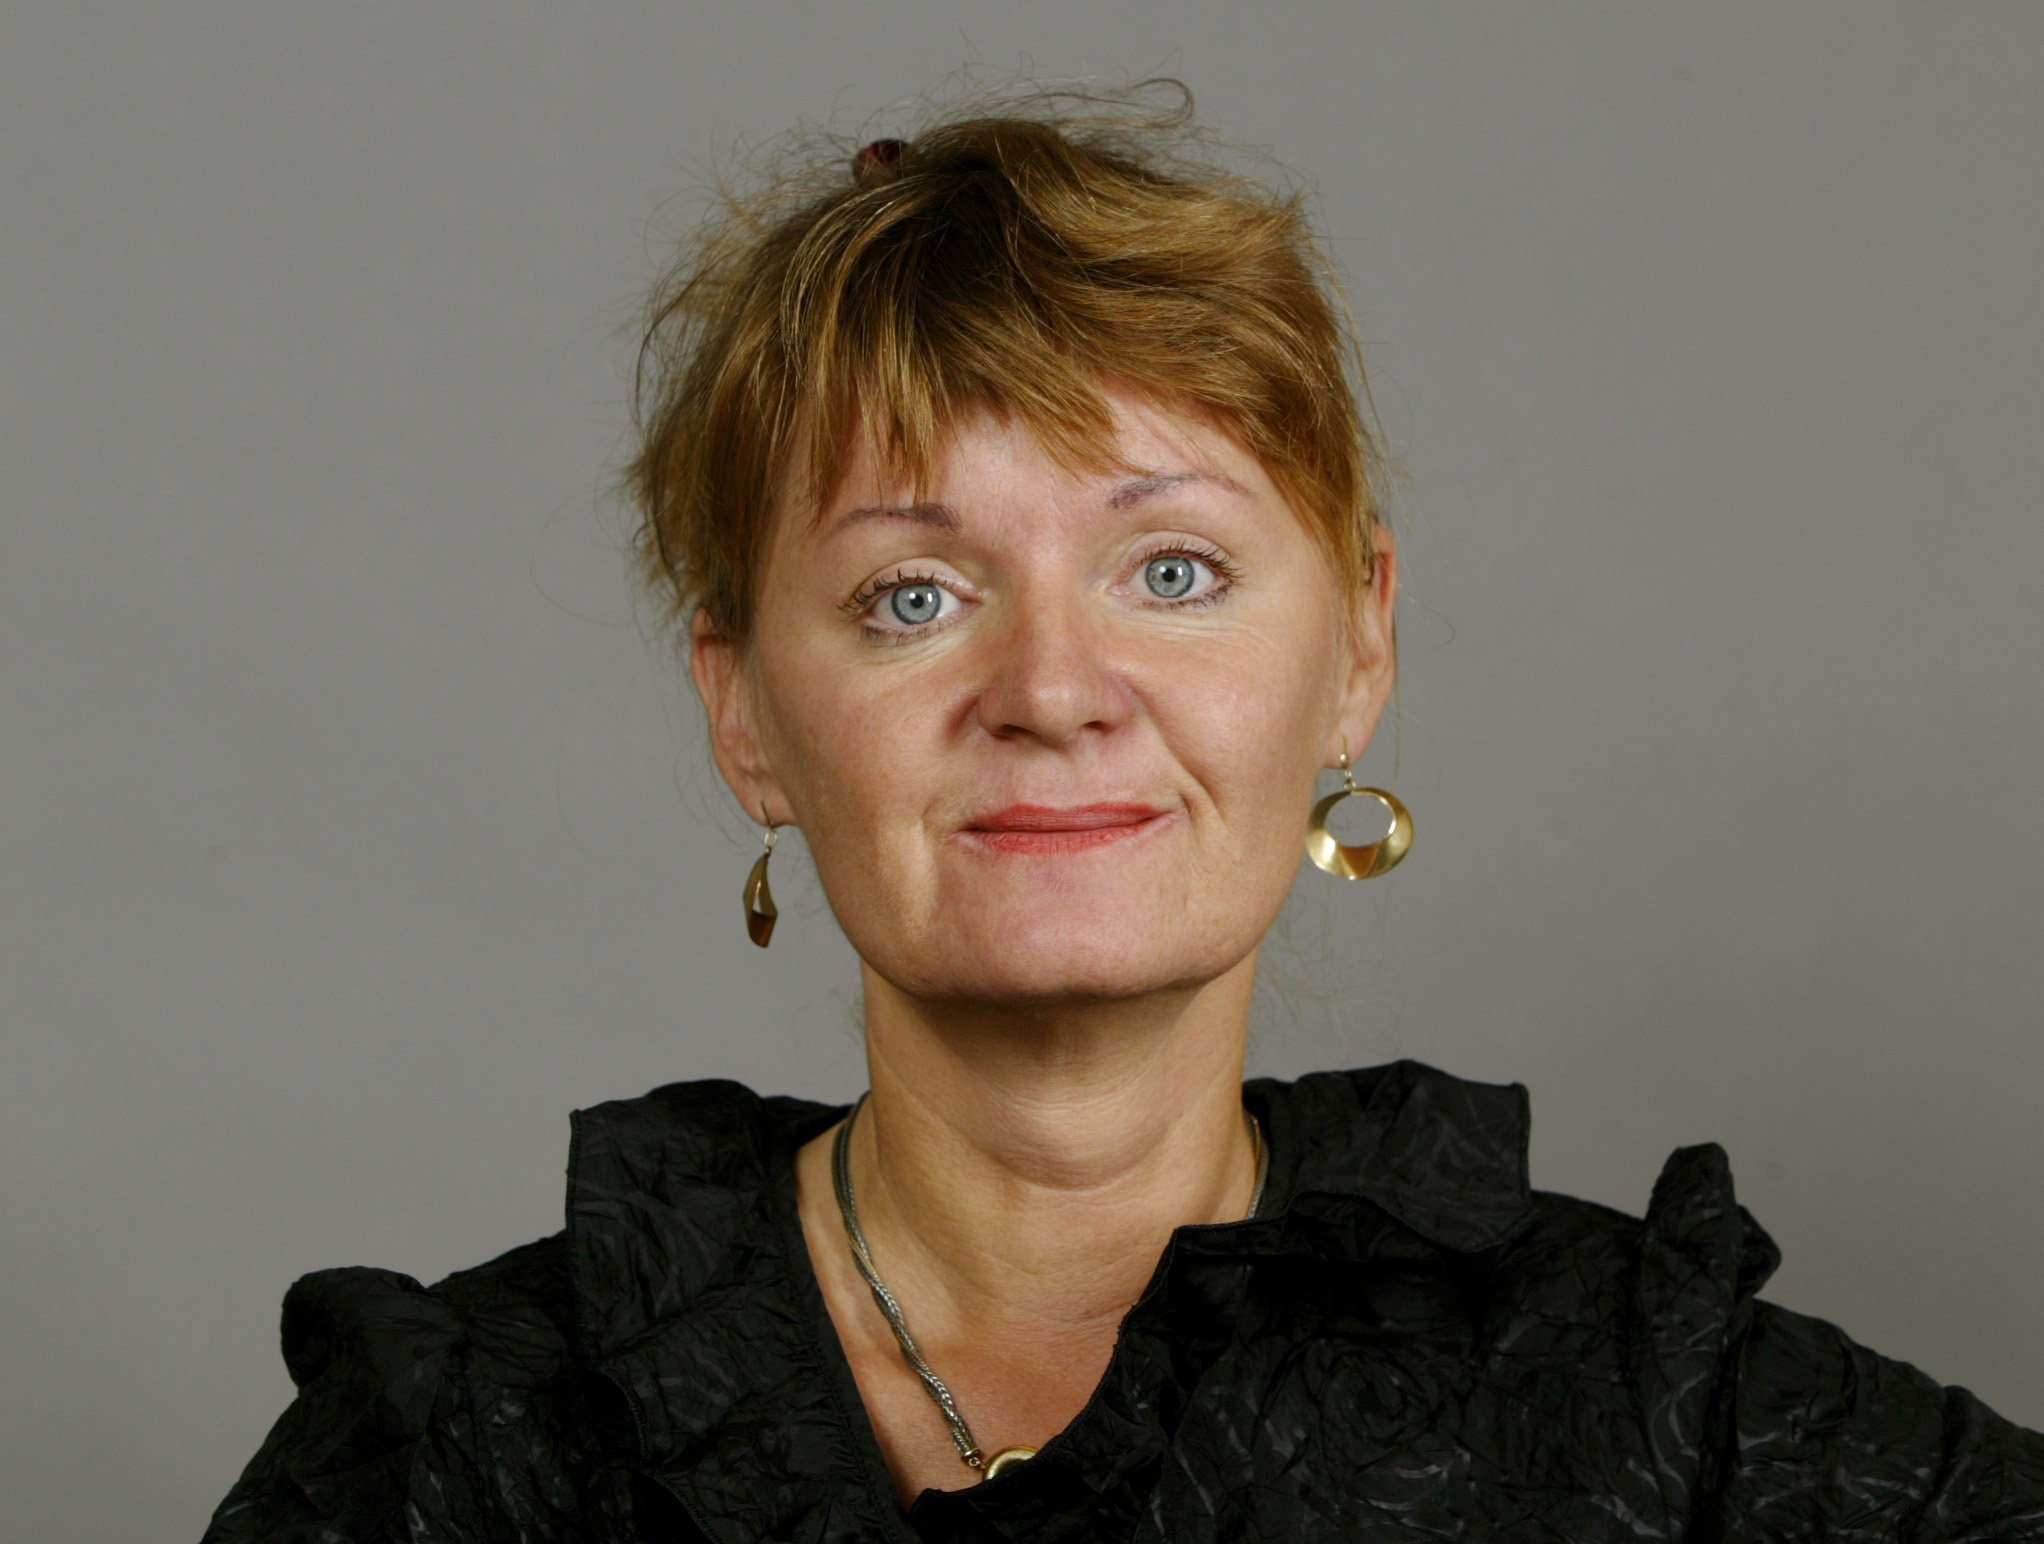 Feminism, Sverigedemokraterna, Carina Hägg, Feministiskt initiativ, Gudrun Schyman, Riksdagsvalet 2010, Alliansen